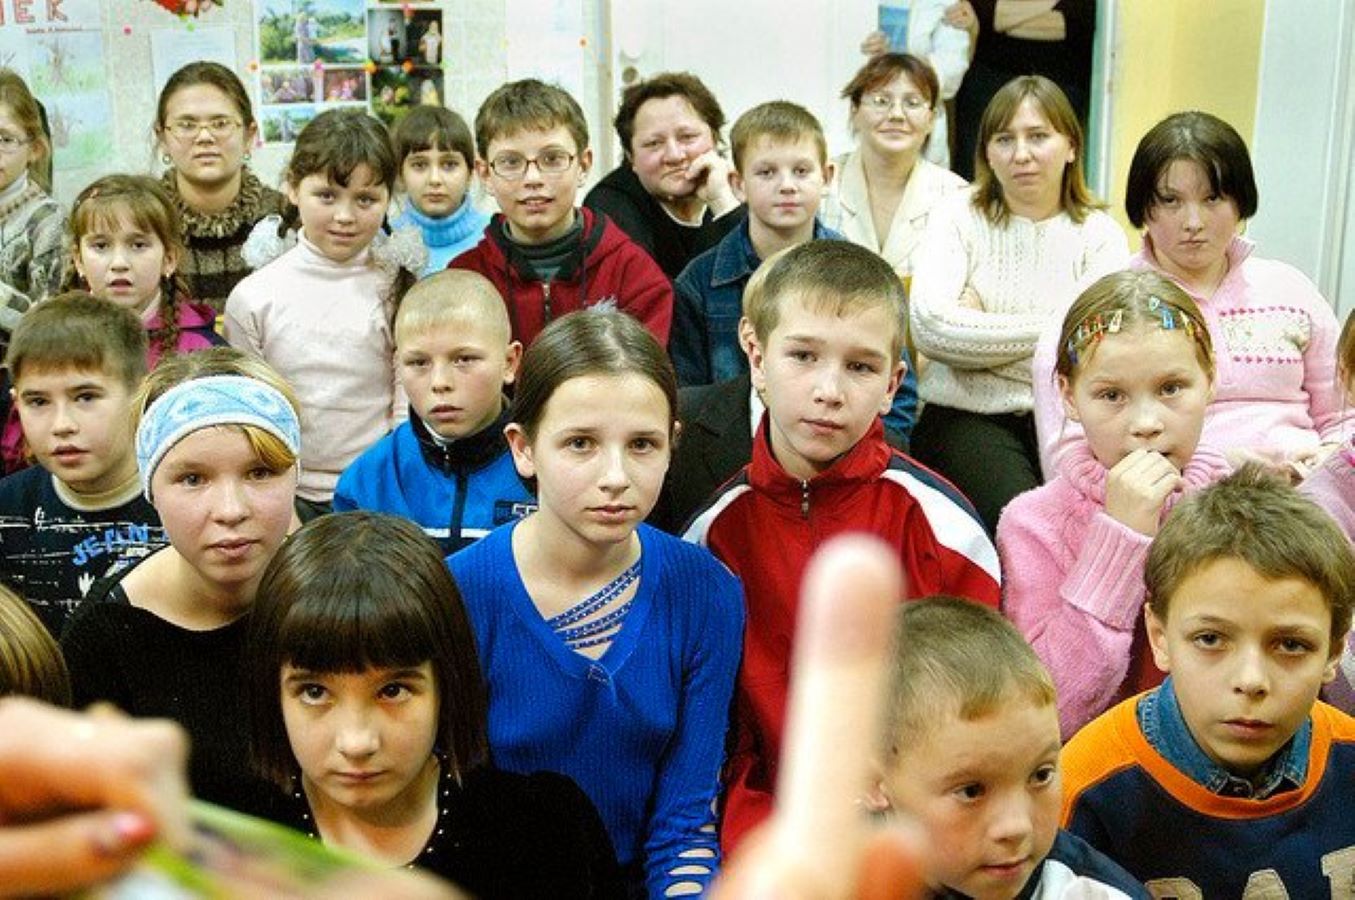 مليون روبل لكل روسية تنجب 10 أطفال Image